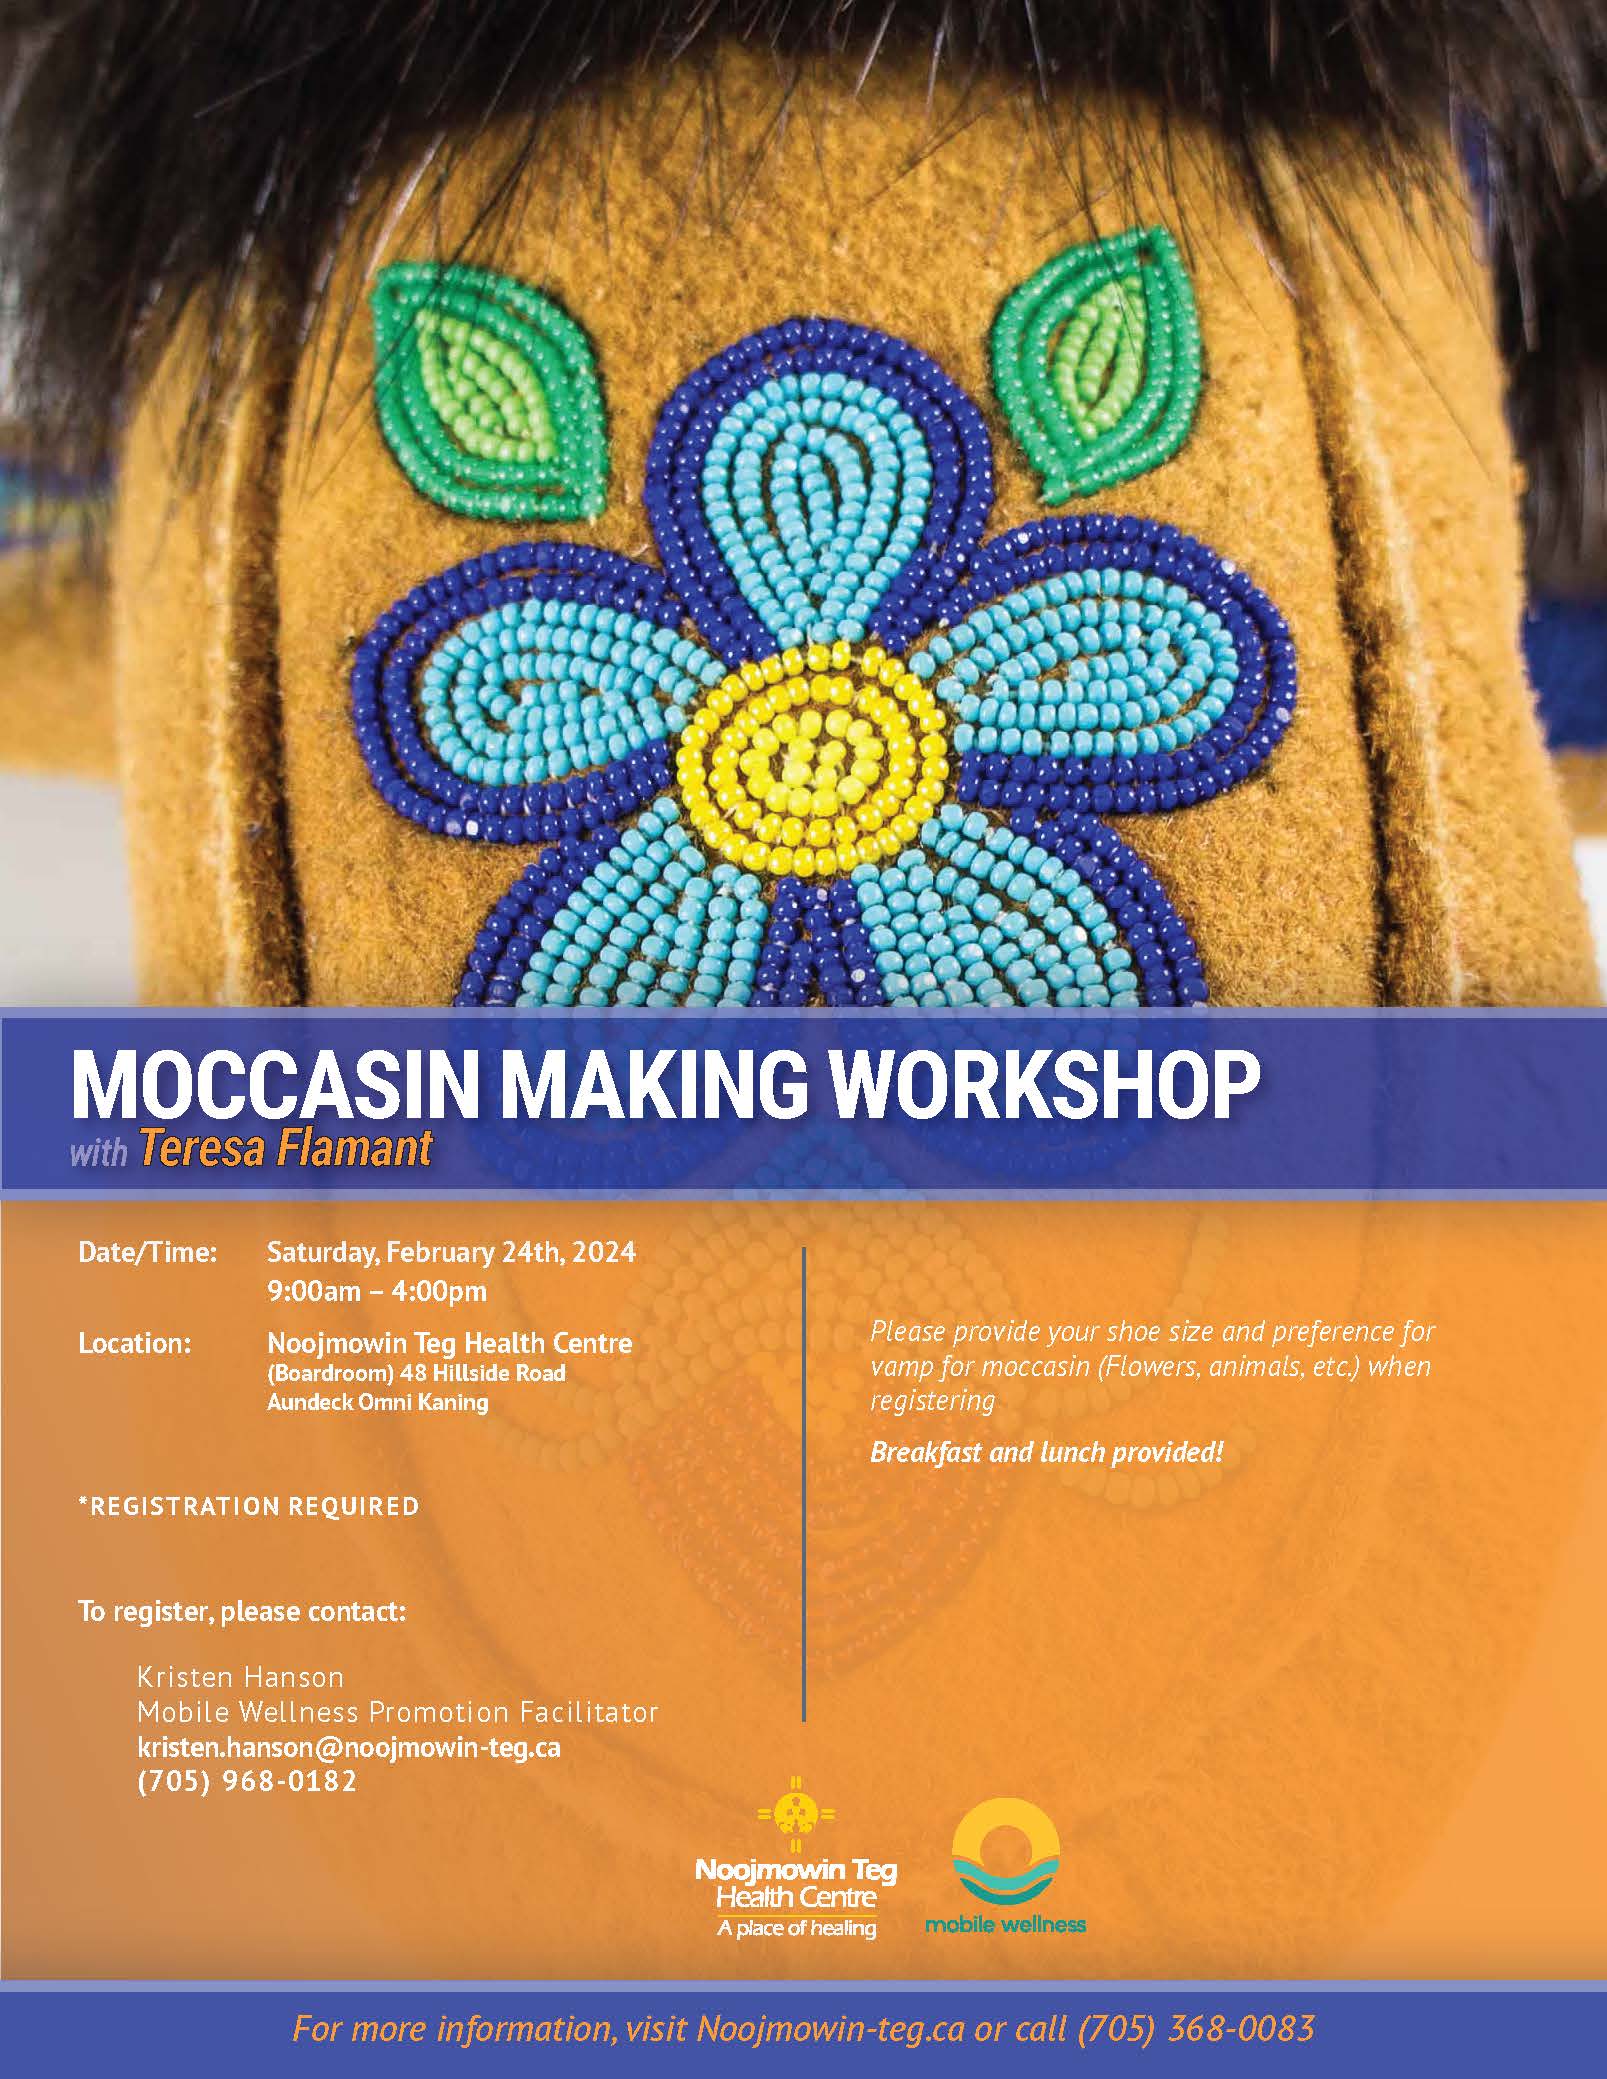 Moccasin Making Workshop45